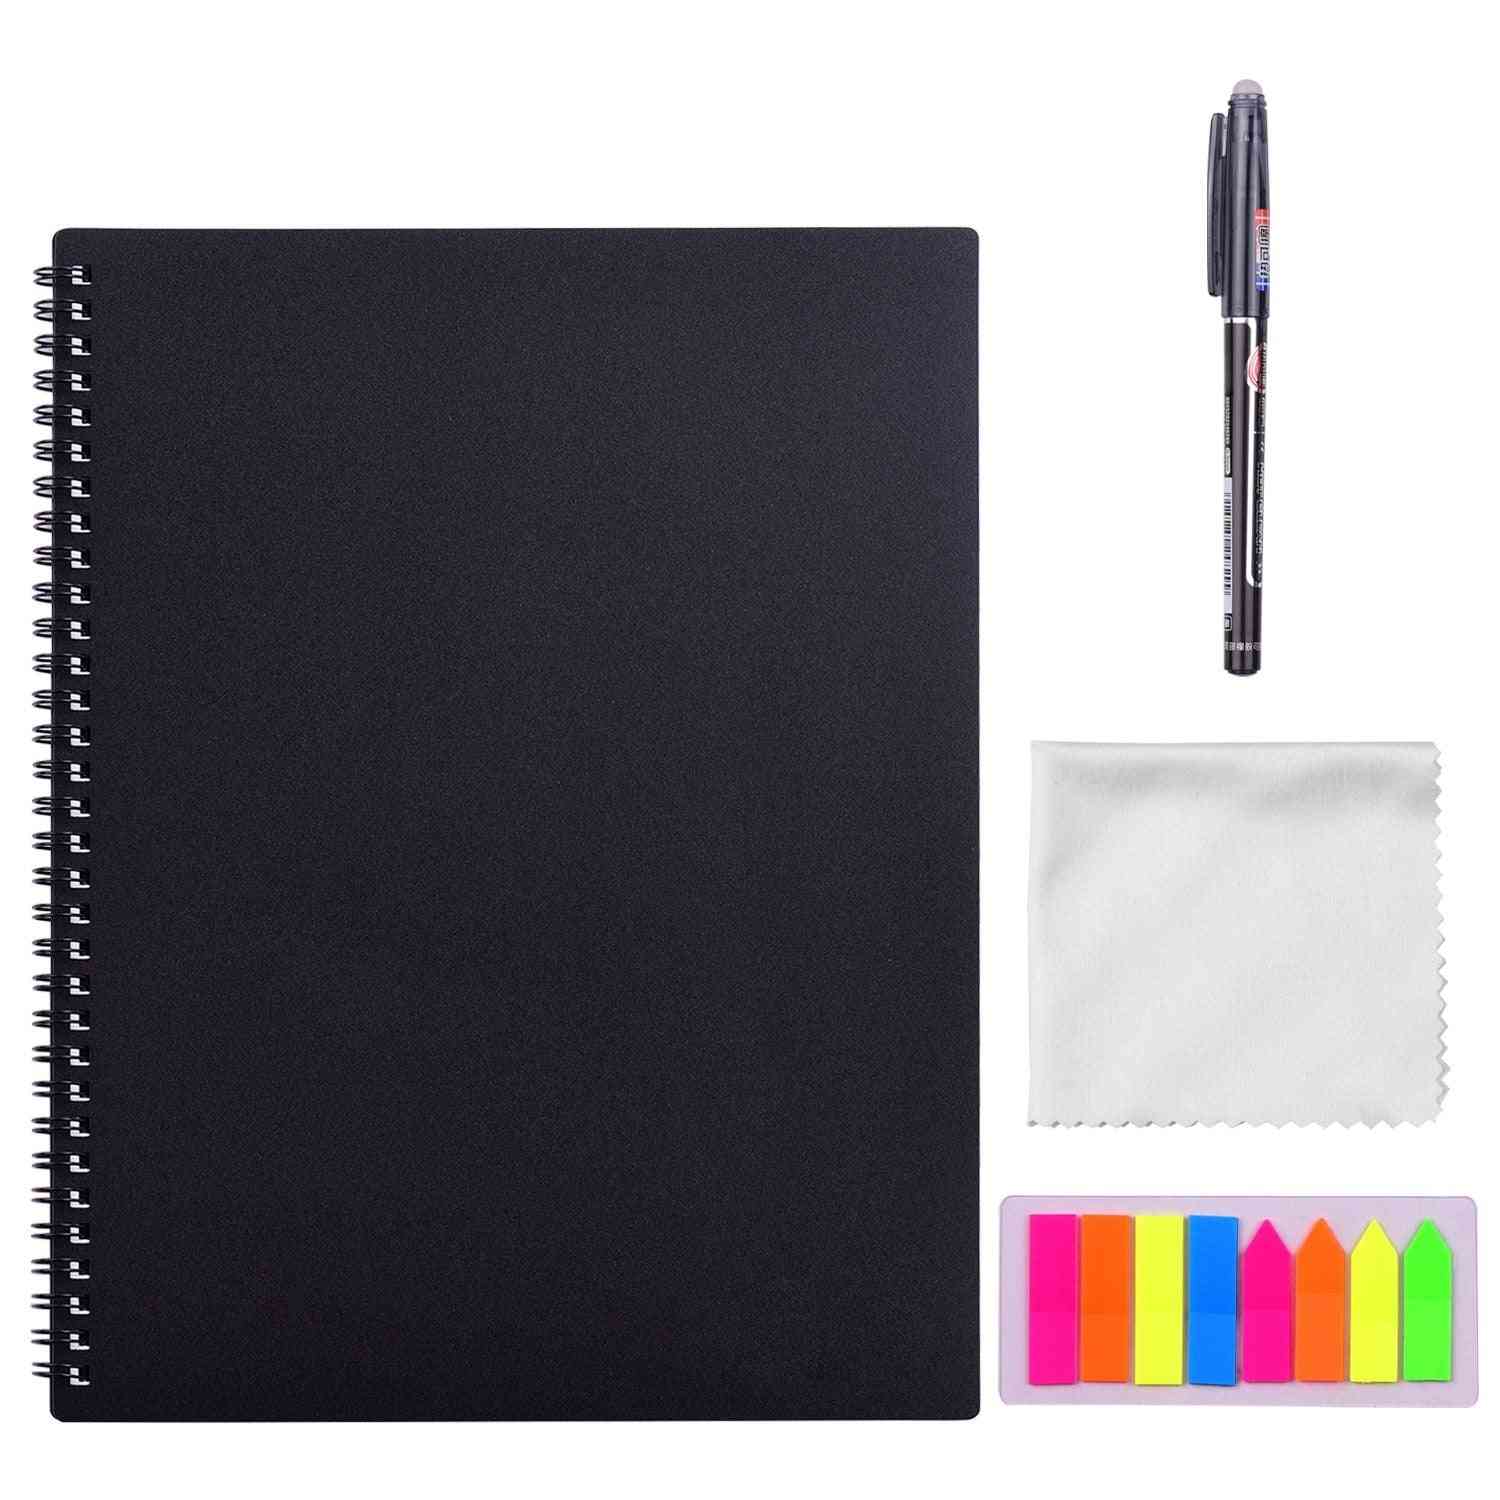 Erasable, Reusable Smart Notebook -a4 Size 20 Sheet With Pen